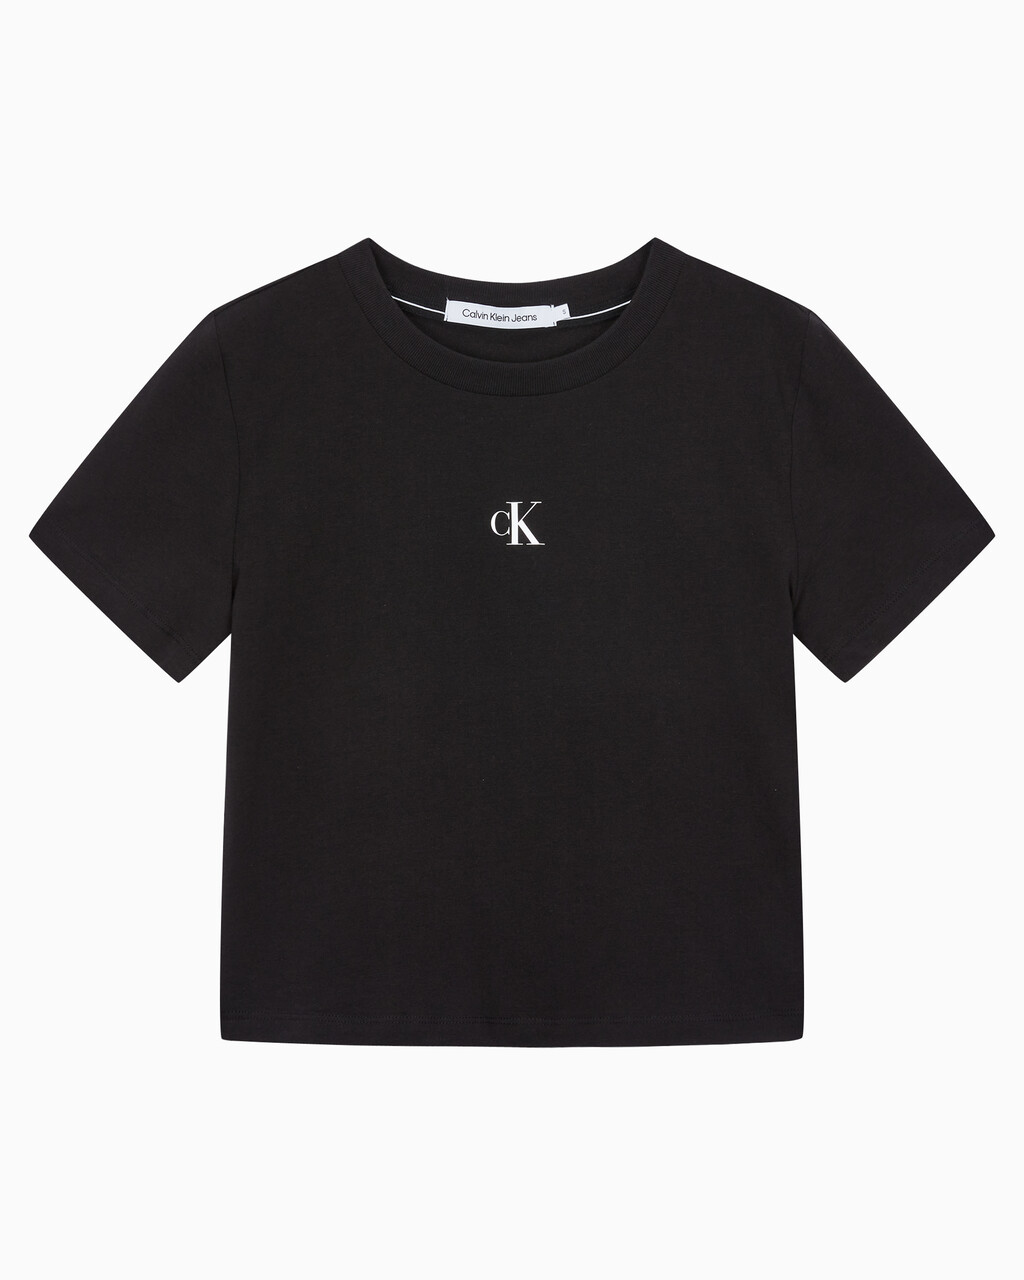 Buy 여성 슬림핏 베이비 크롭 반팔 티셔츠 in color CK BLACK